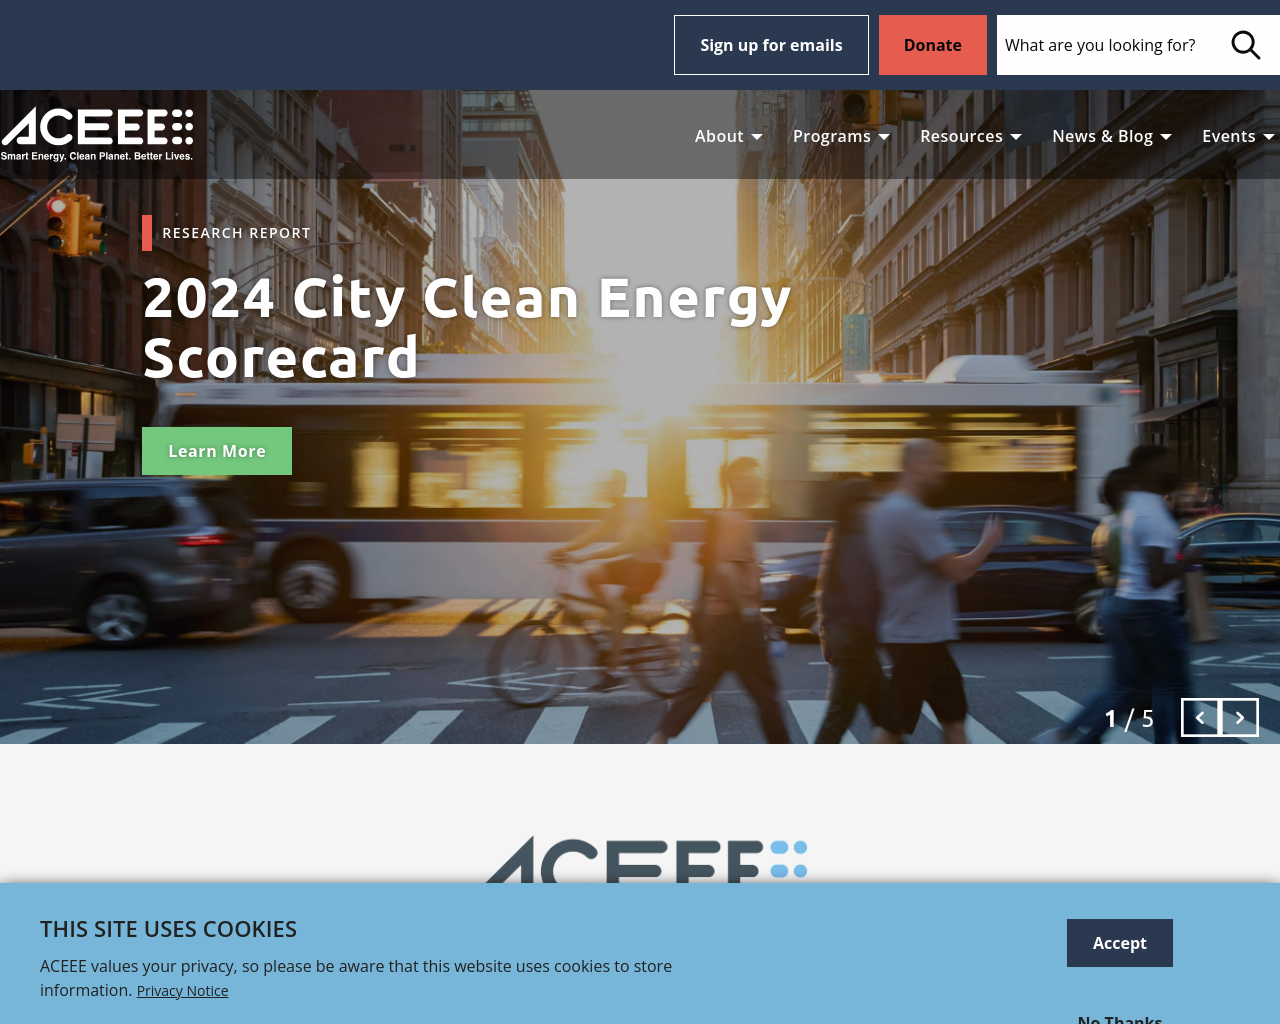 aceee.org